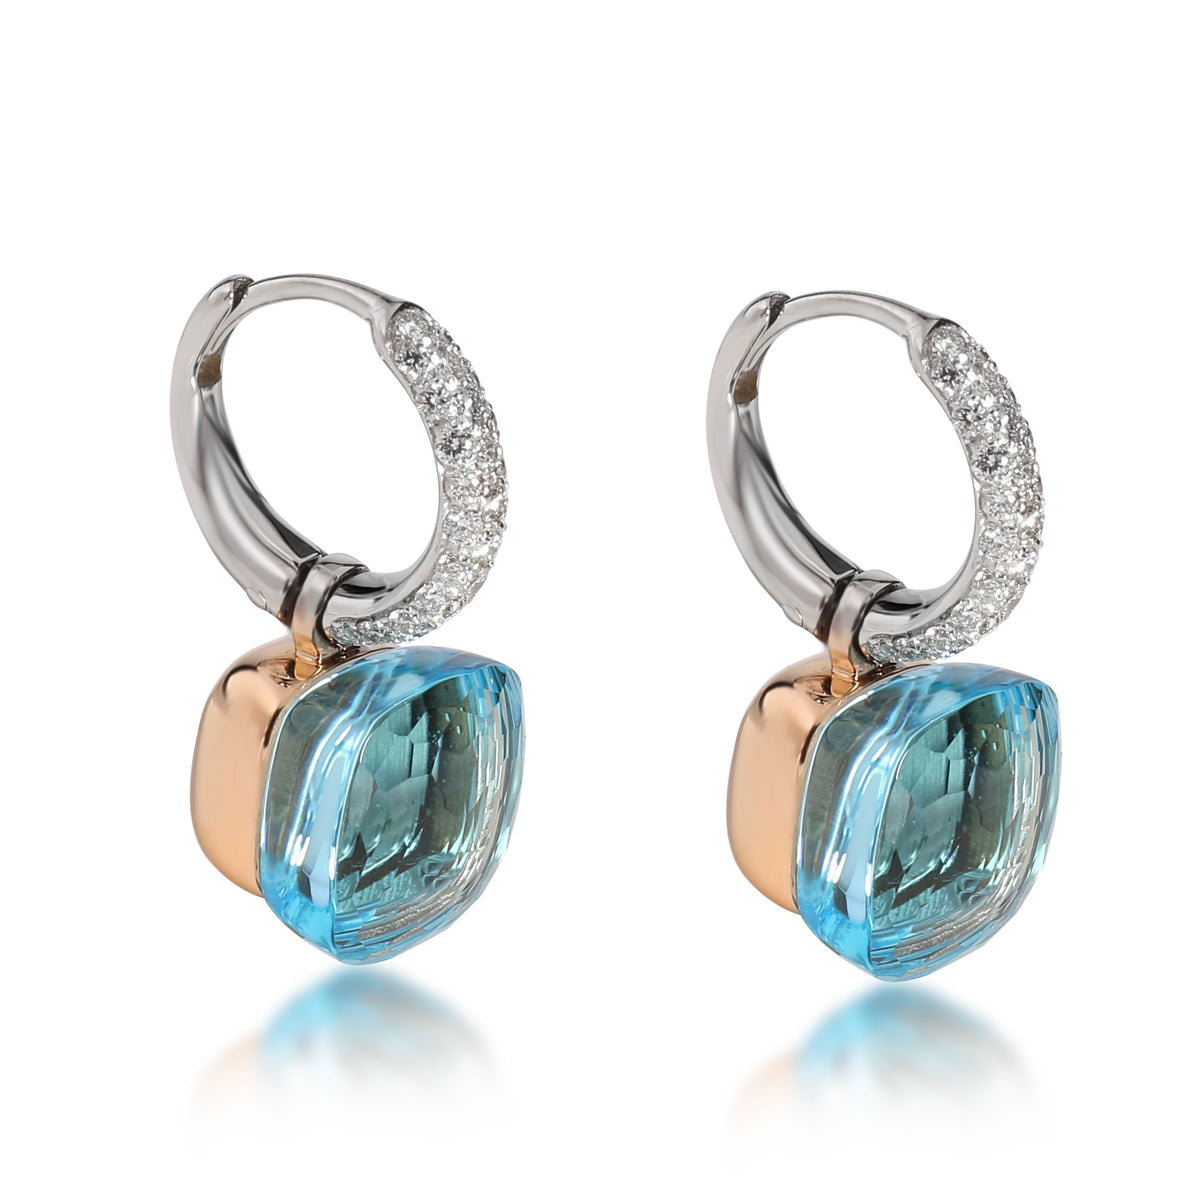 Pomellato Nudo Blue Topaz Diamond Earrings in 18K White & Rose Gold 0.55 CTW